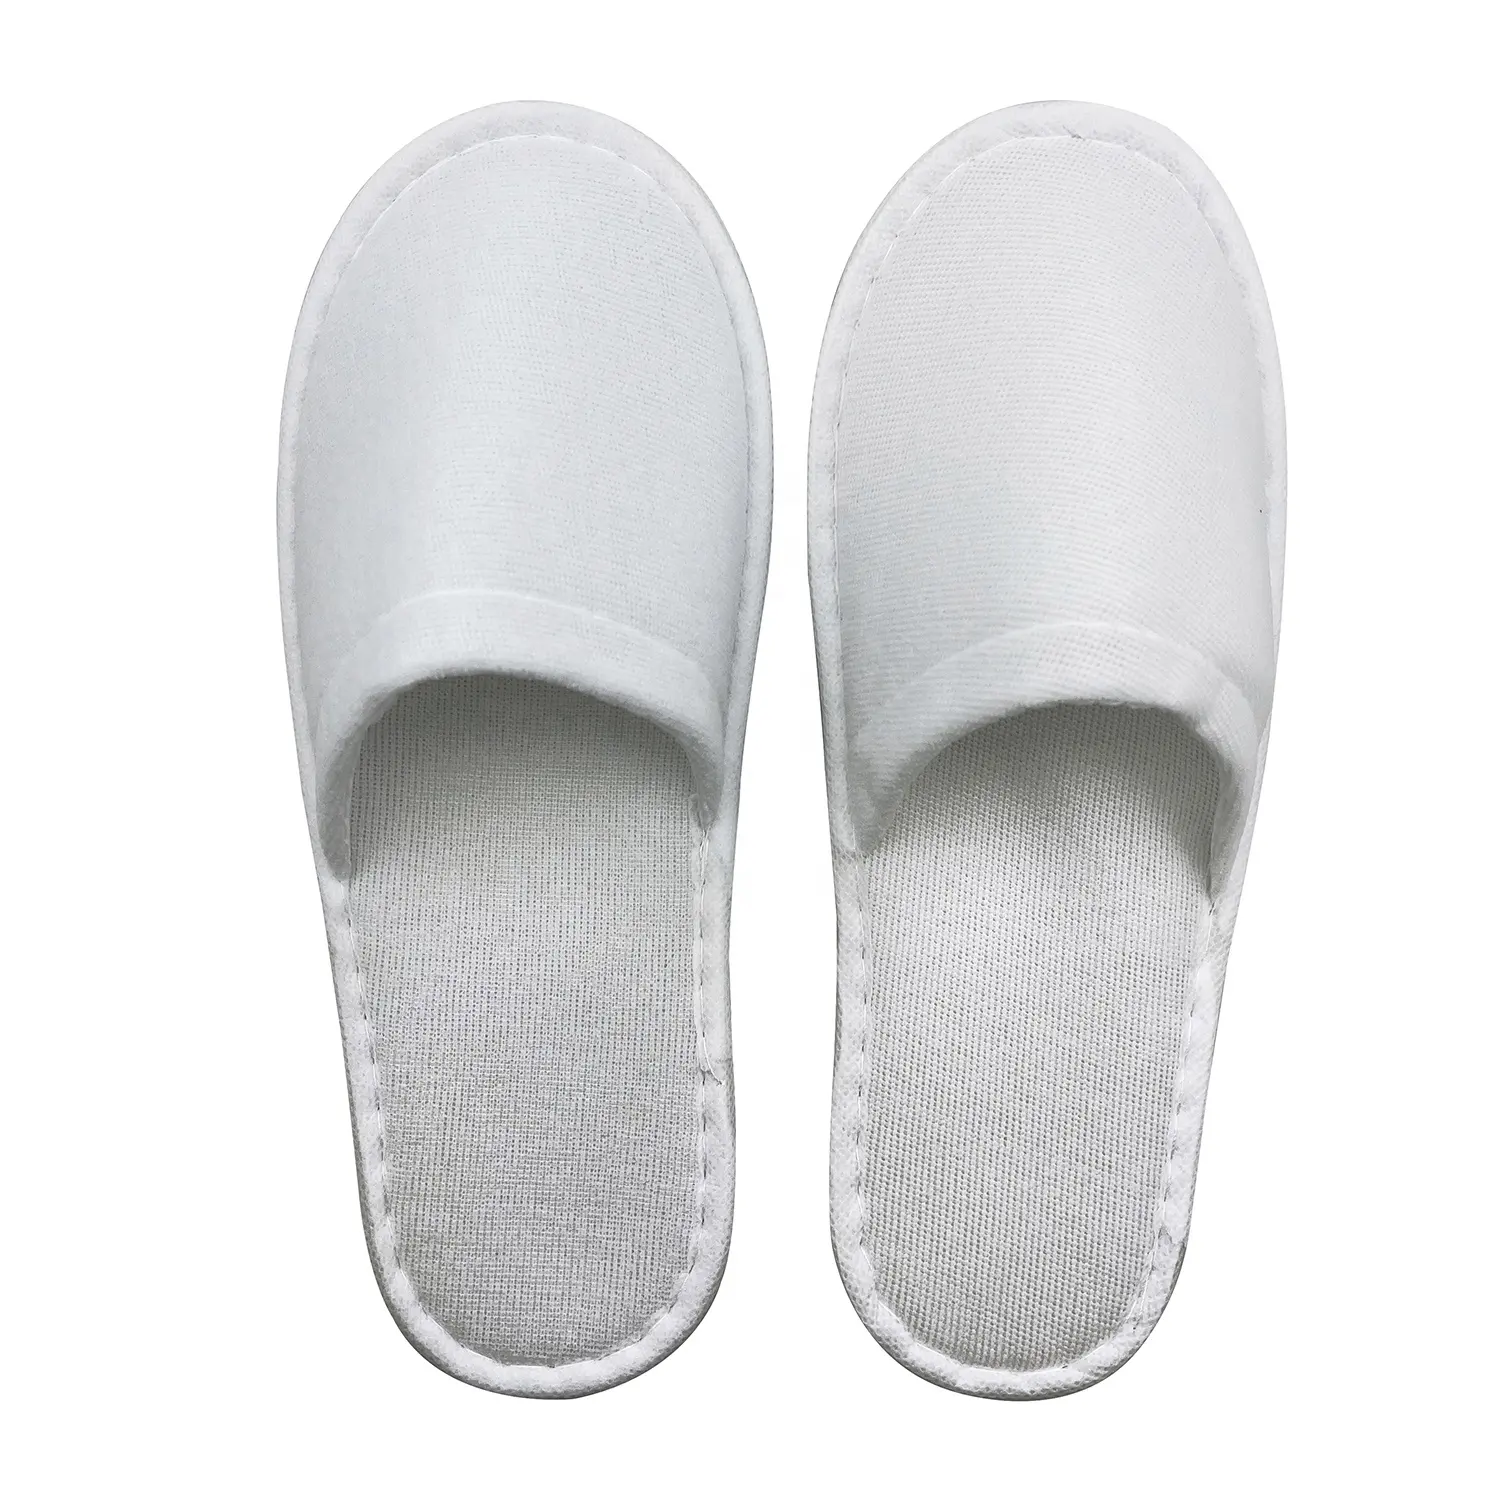 Zapatillas de hotel desechables blancas personalizadas Zapatilla de hotel/SPA de alta calidad Servicios de hotel